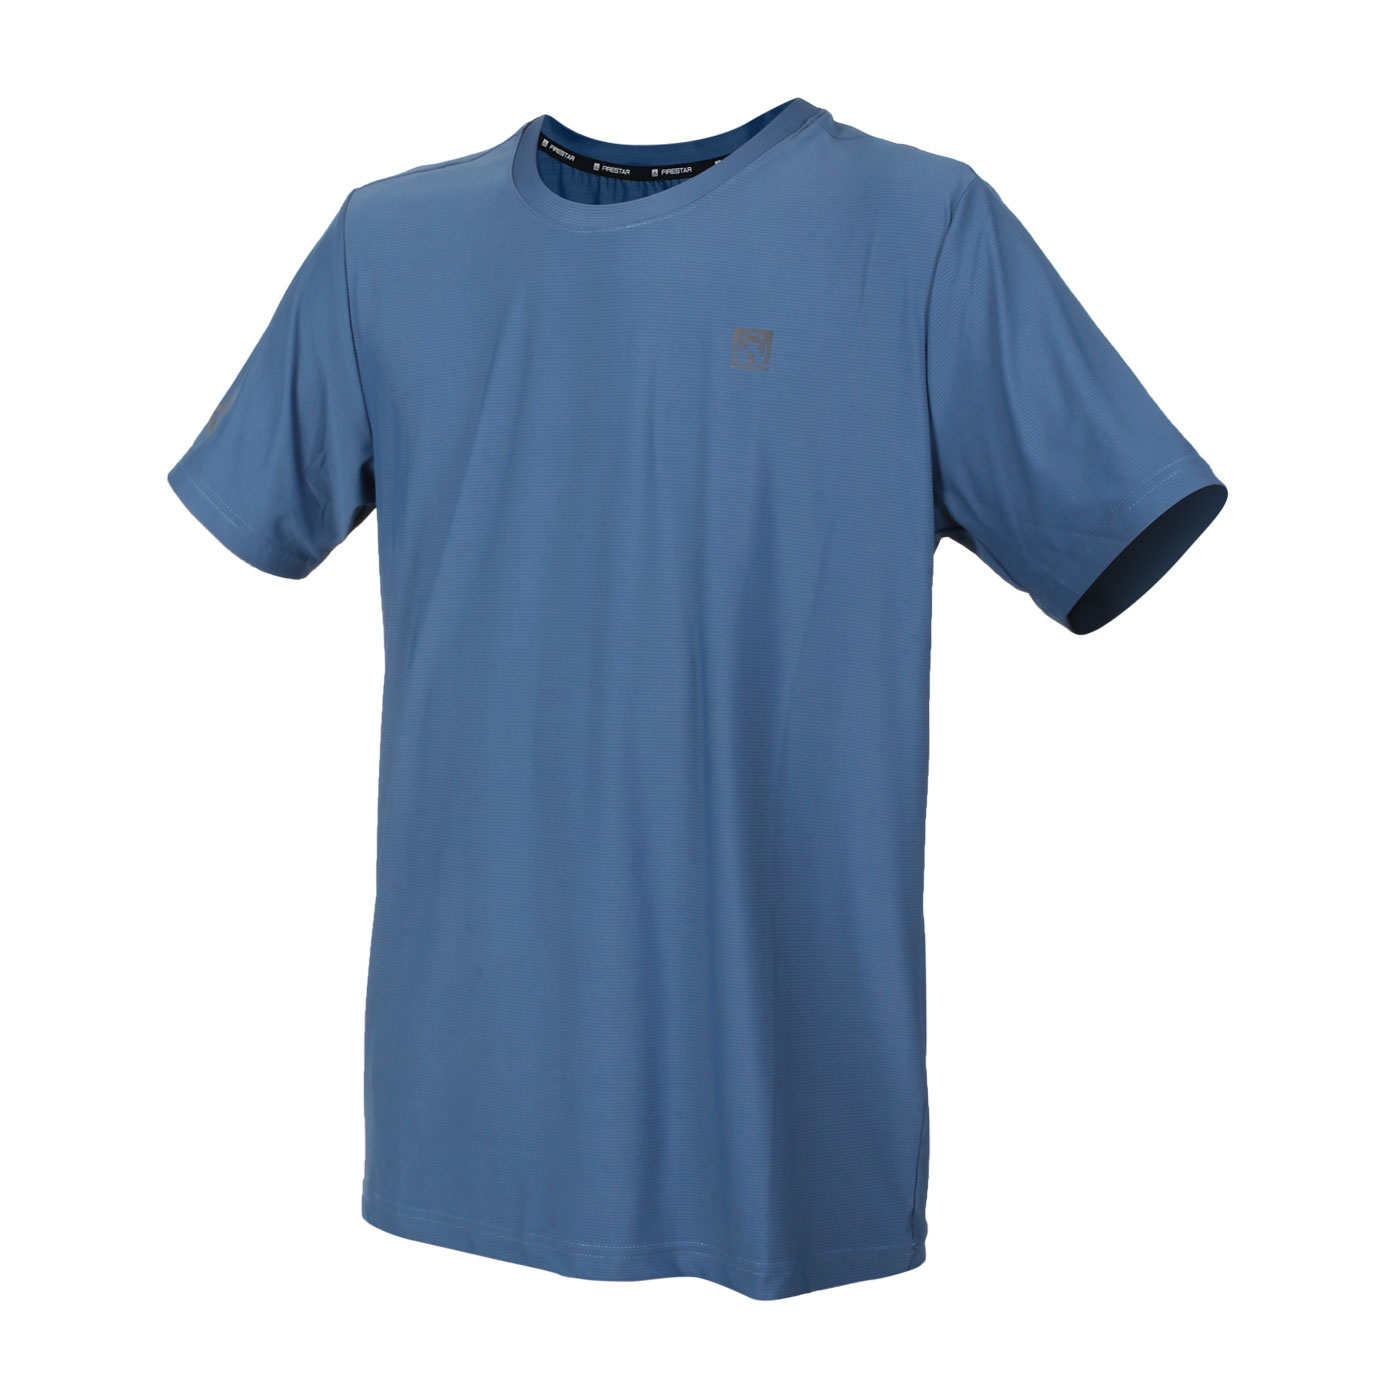 FIRESTAR 男款彈性圓領短袖T恤 D2032-98 - 靛藍灰